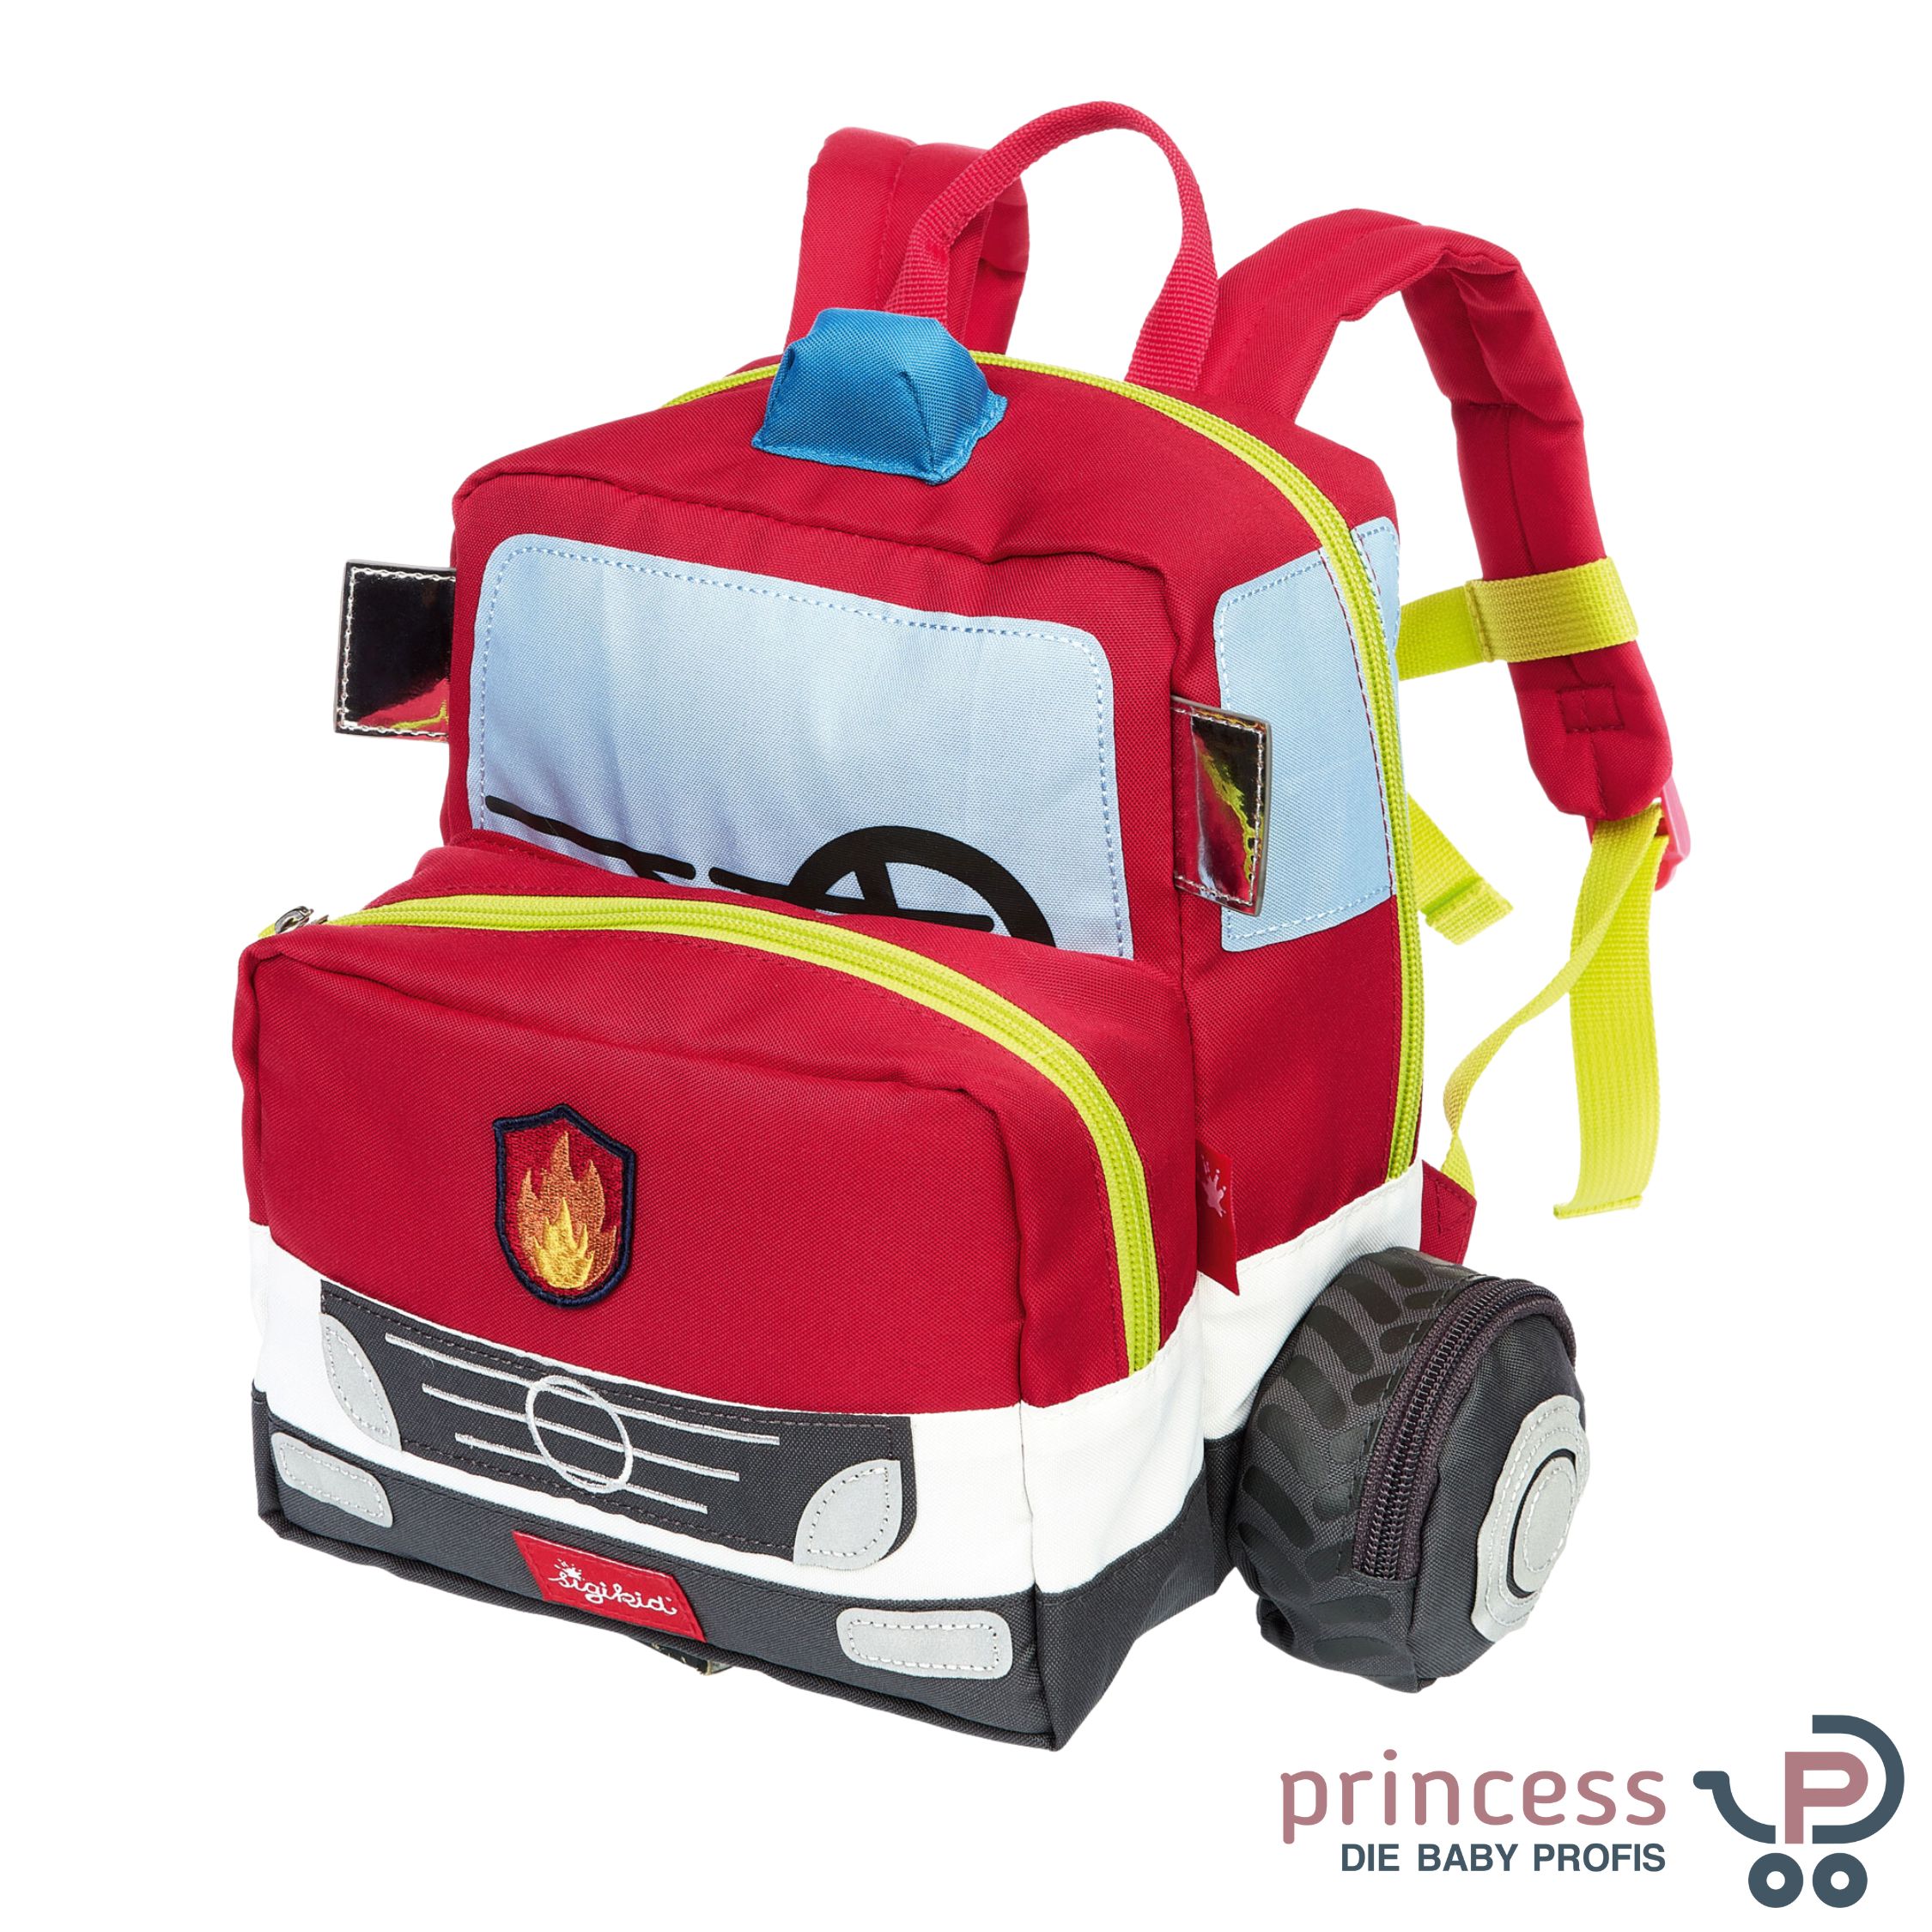 Großer Ausverkauf Sigikid Kinderrucksack Feuerwehrauto Kinderwagen Onlineshop - Princess